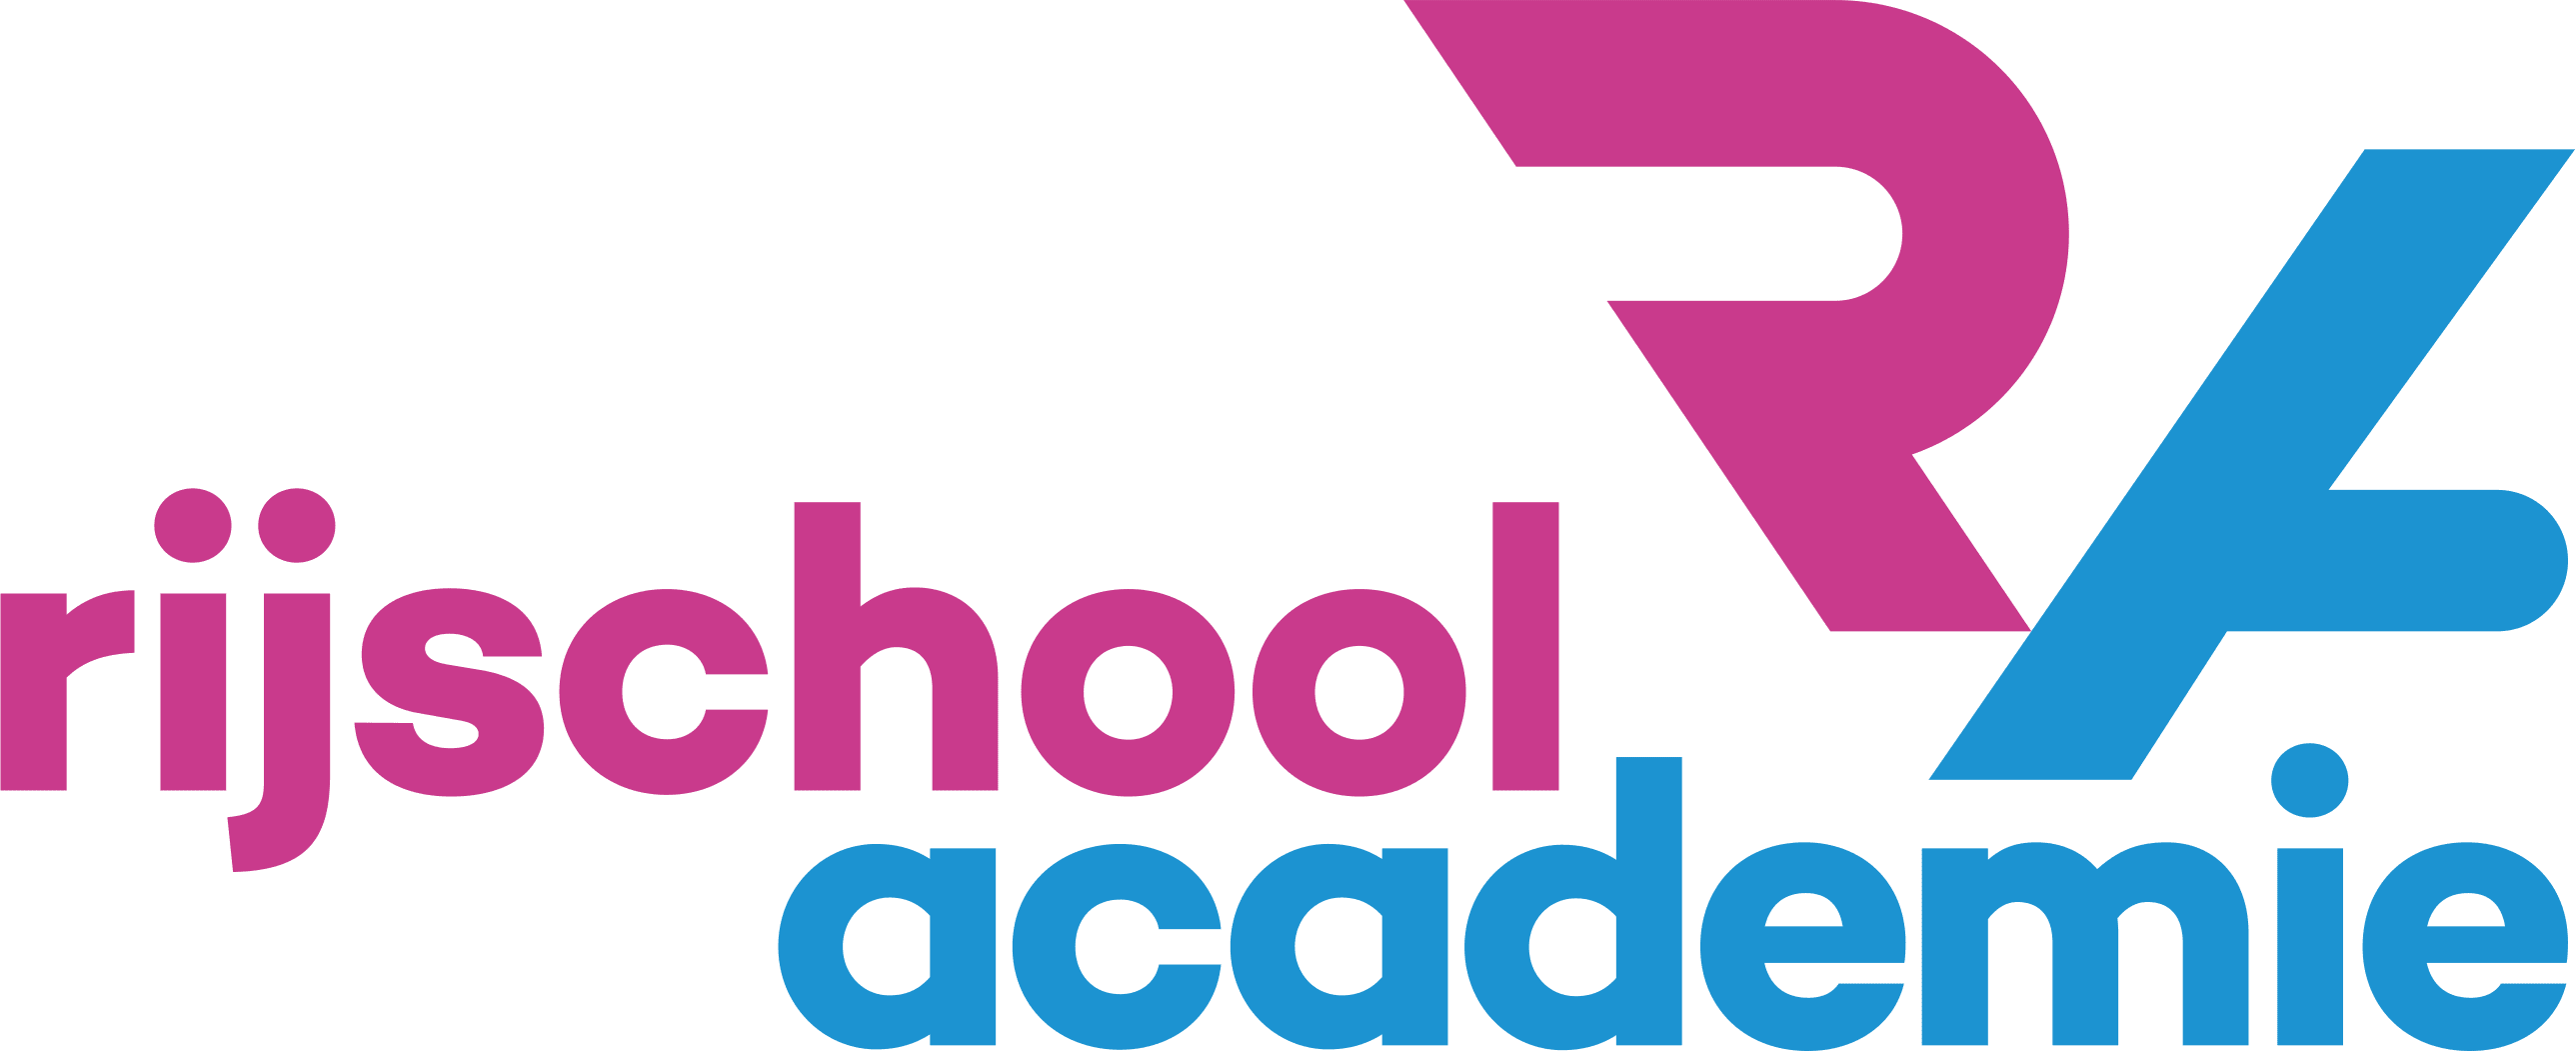 rijschool academie-logo